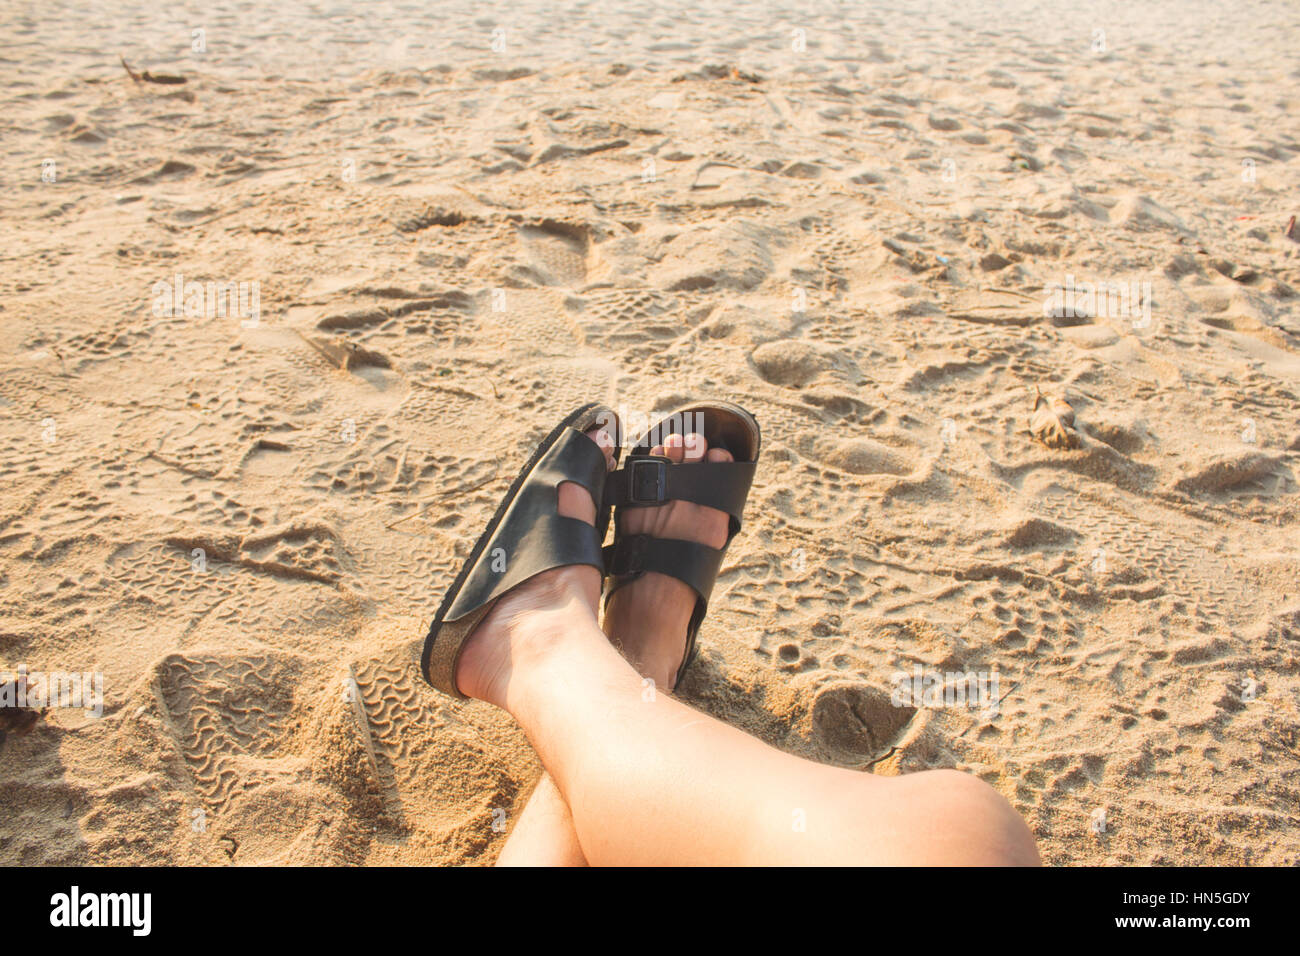 L'été et plage - concept pieds humains sur la plage Banque D'Images